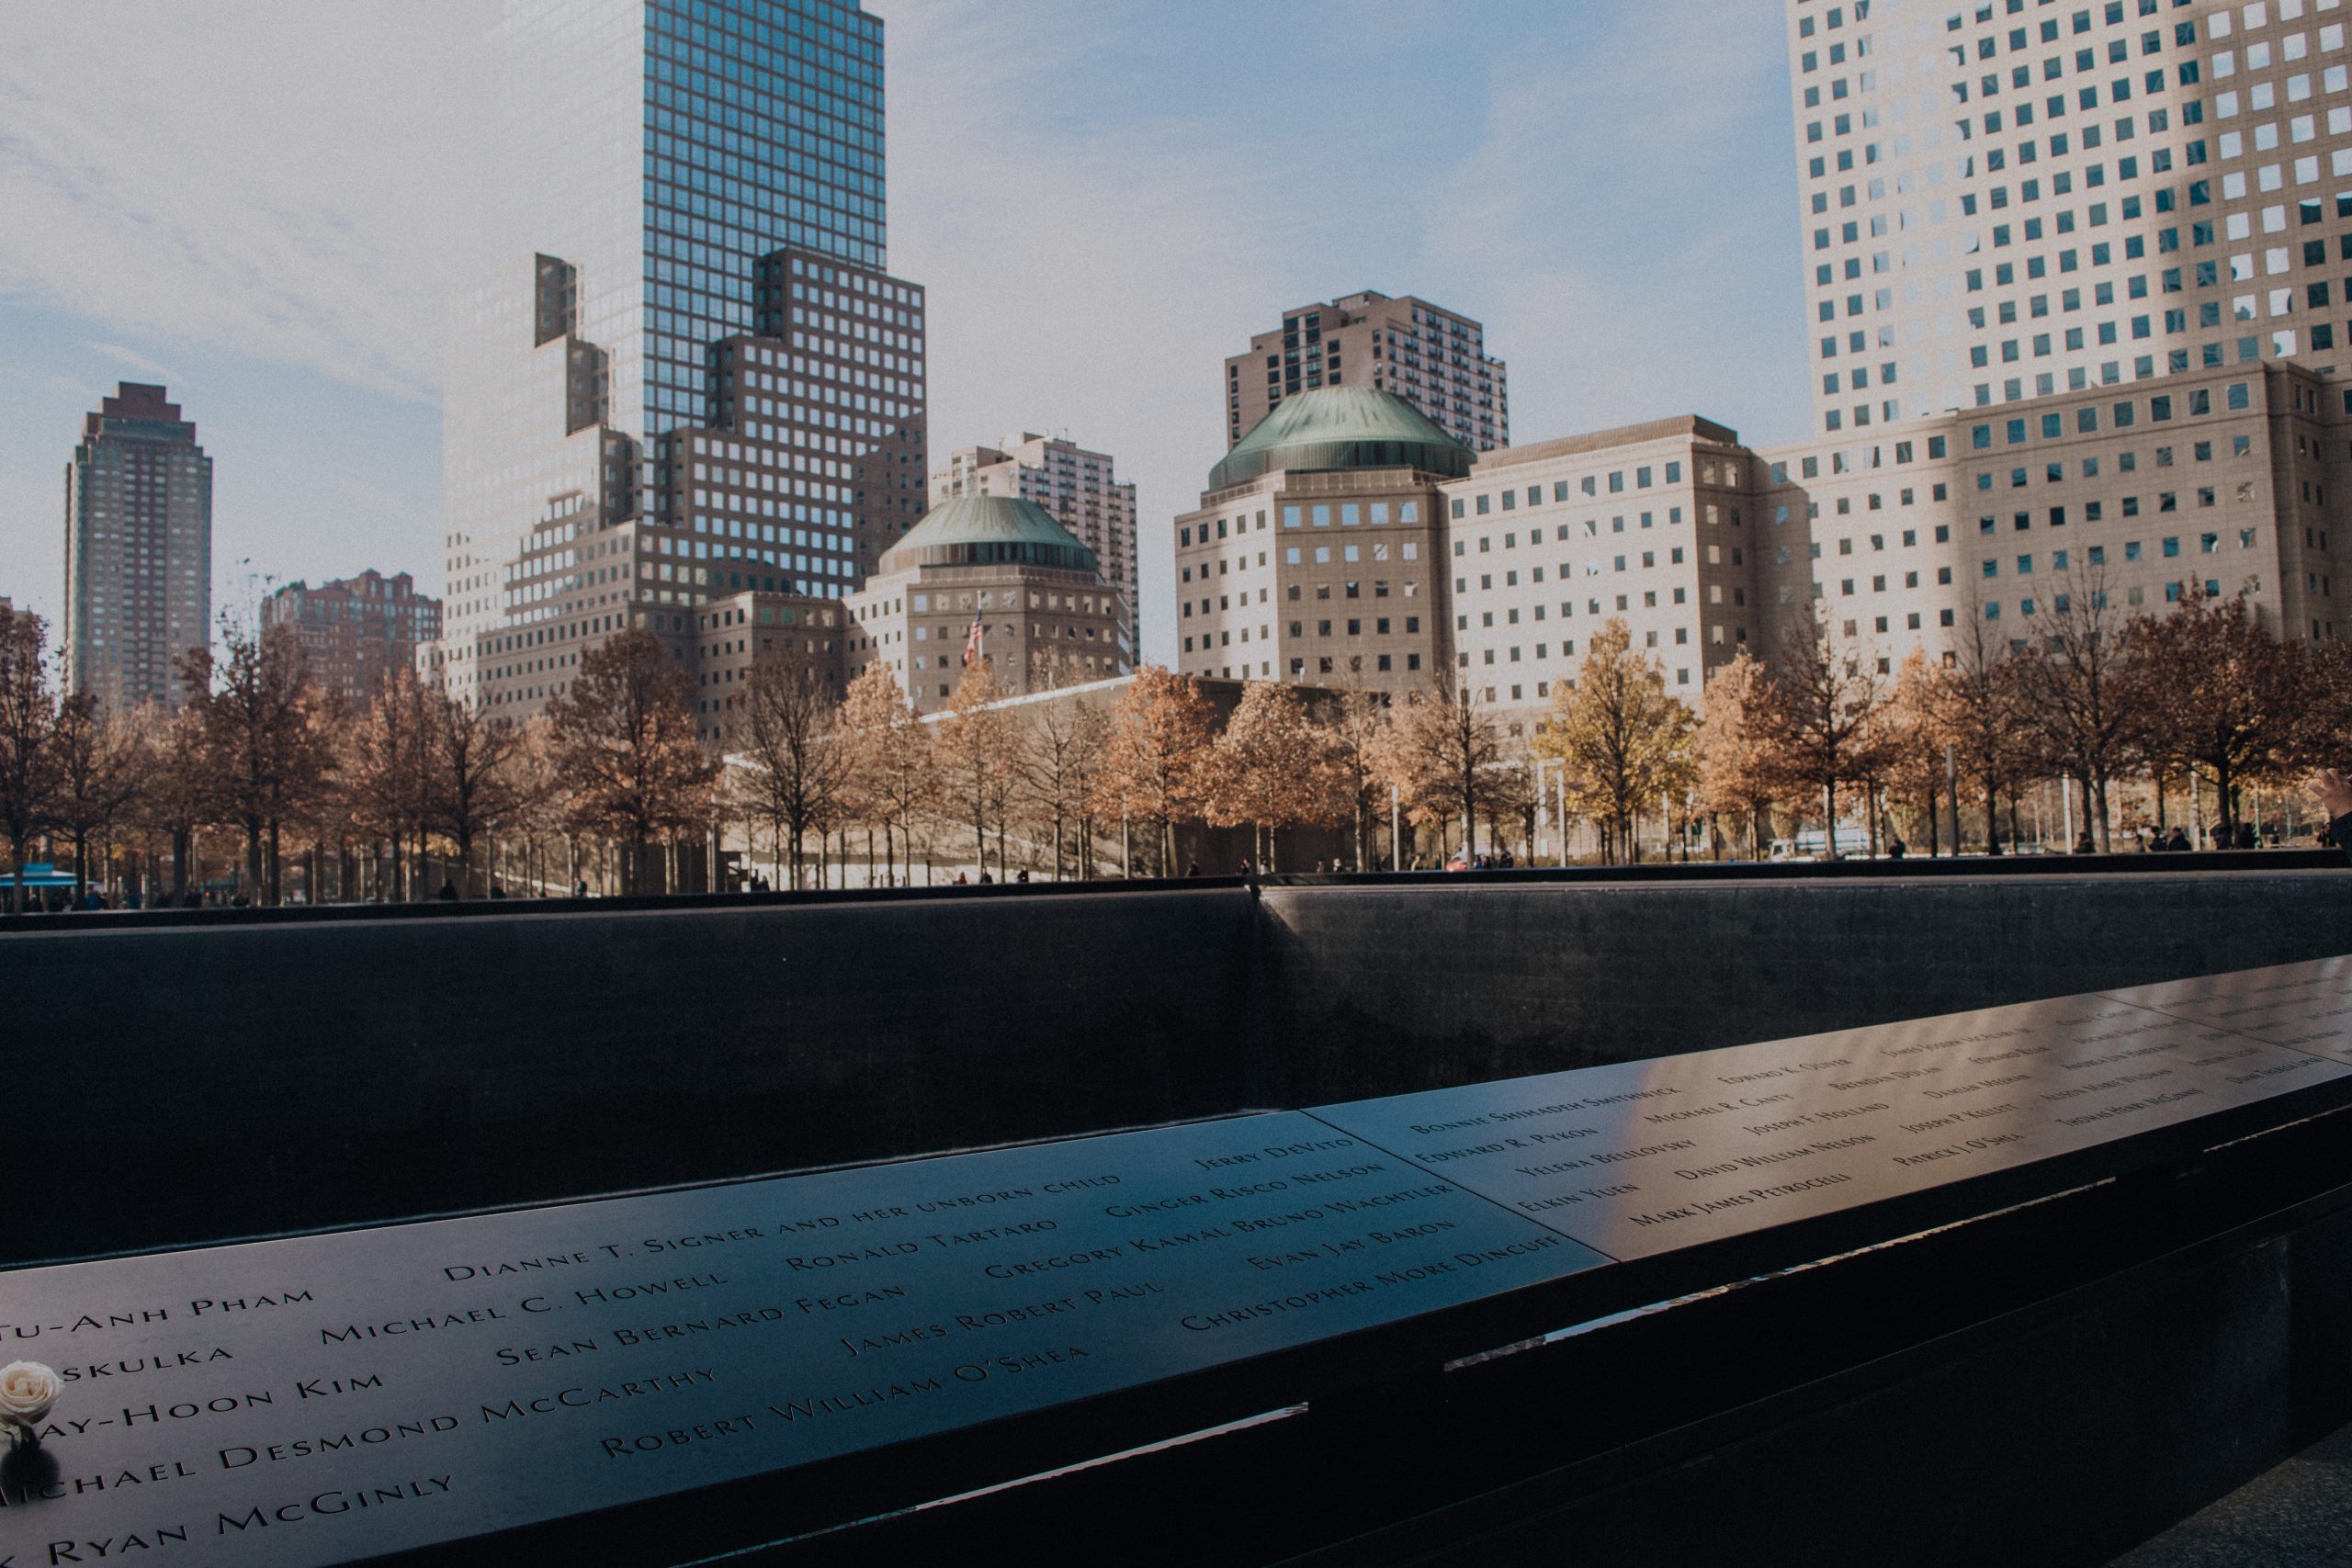 9:11 memorial